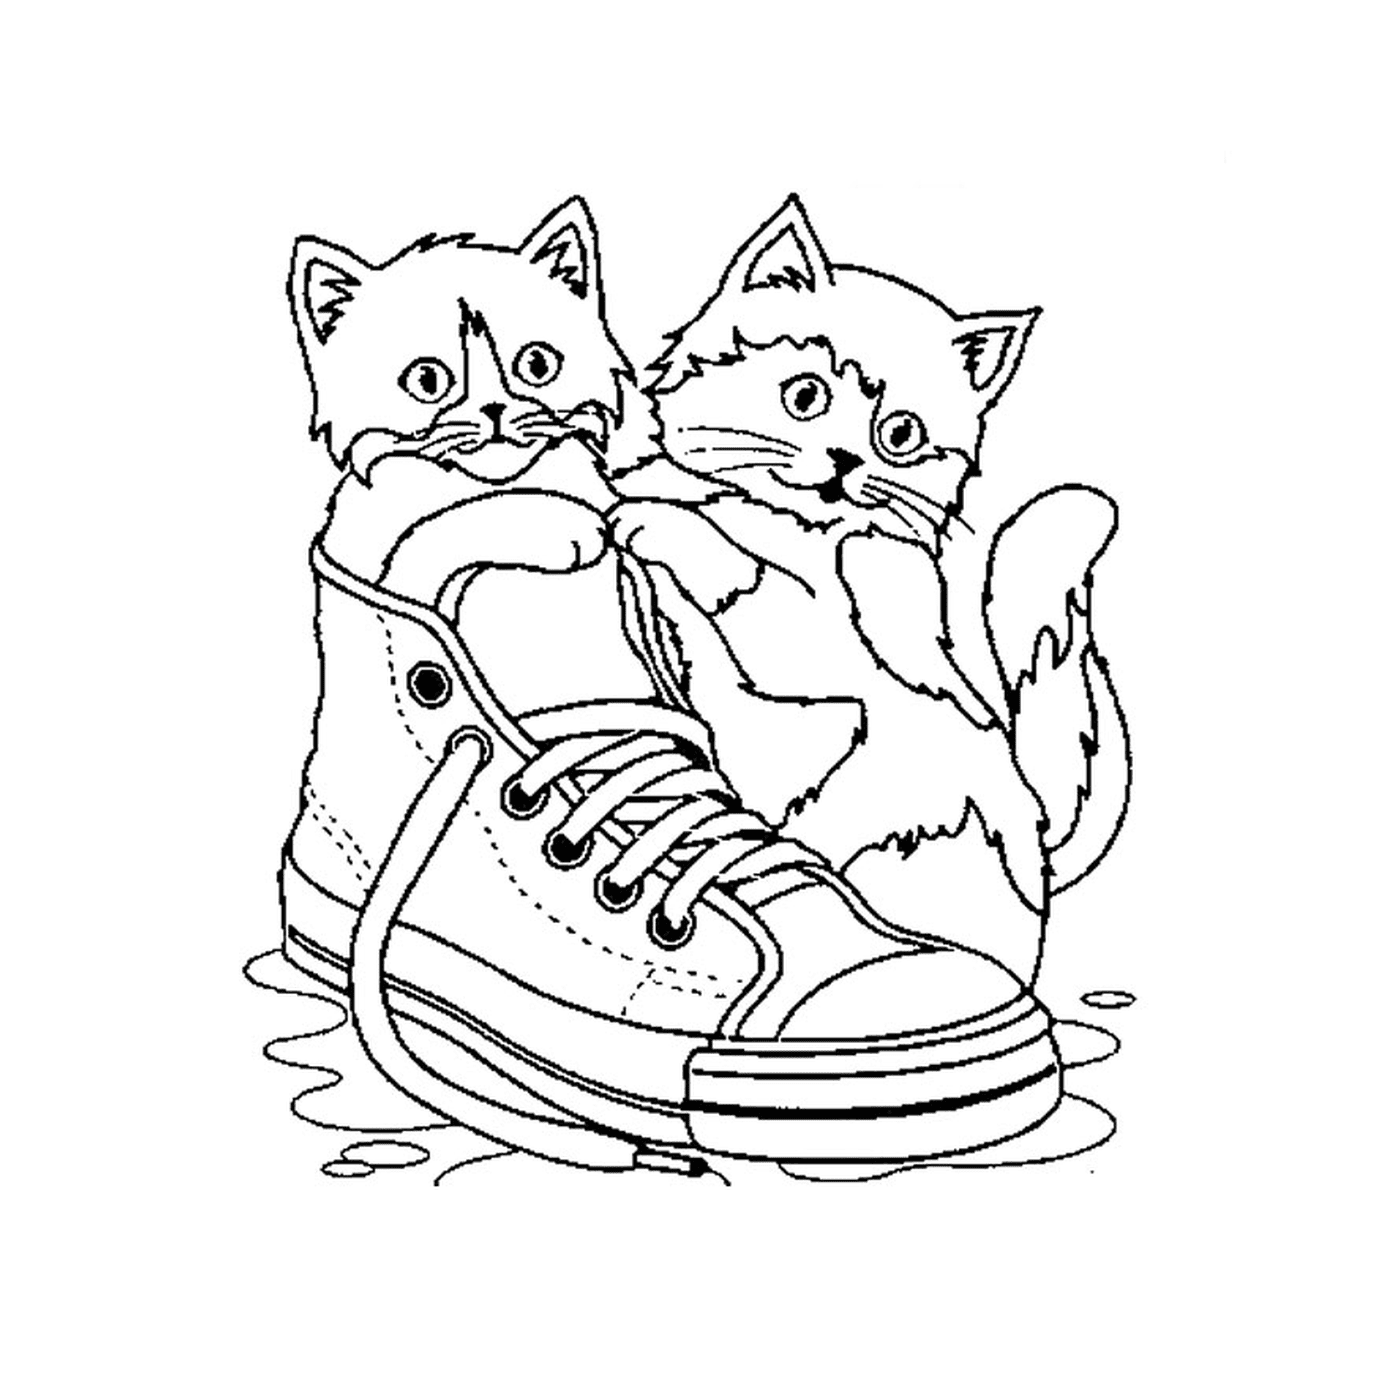  दो बिल्लियाँ पानी में जूते पर बैठी थीं 